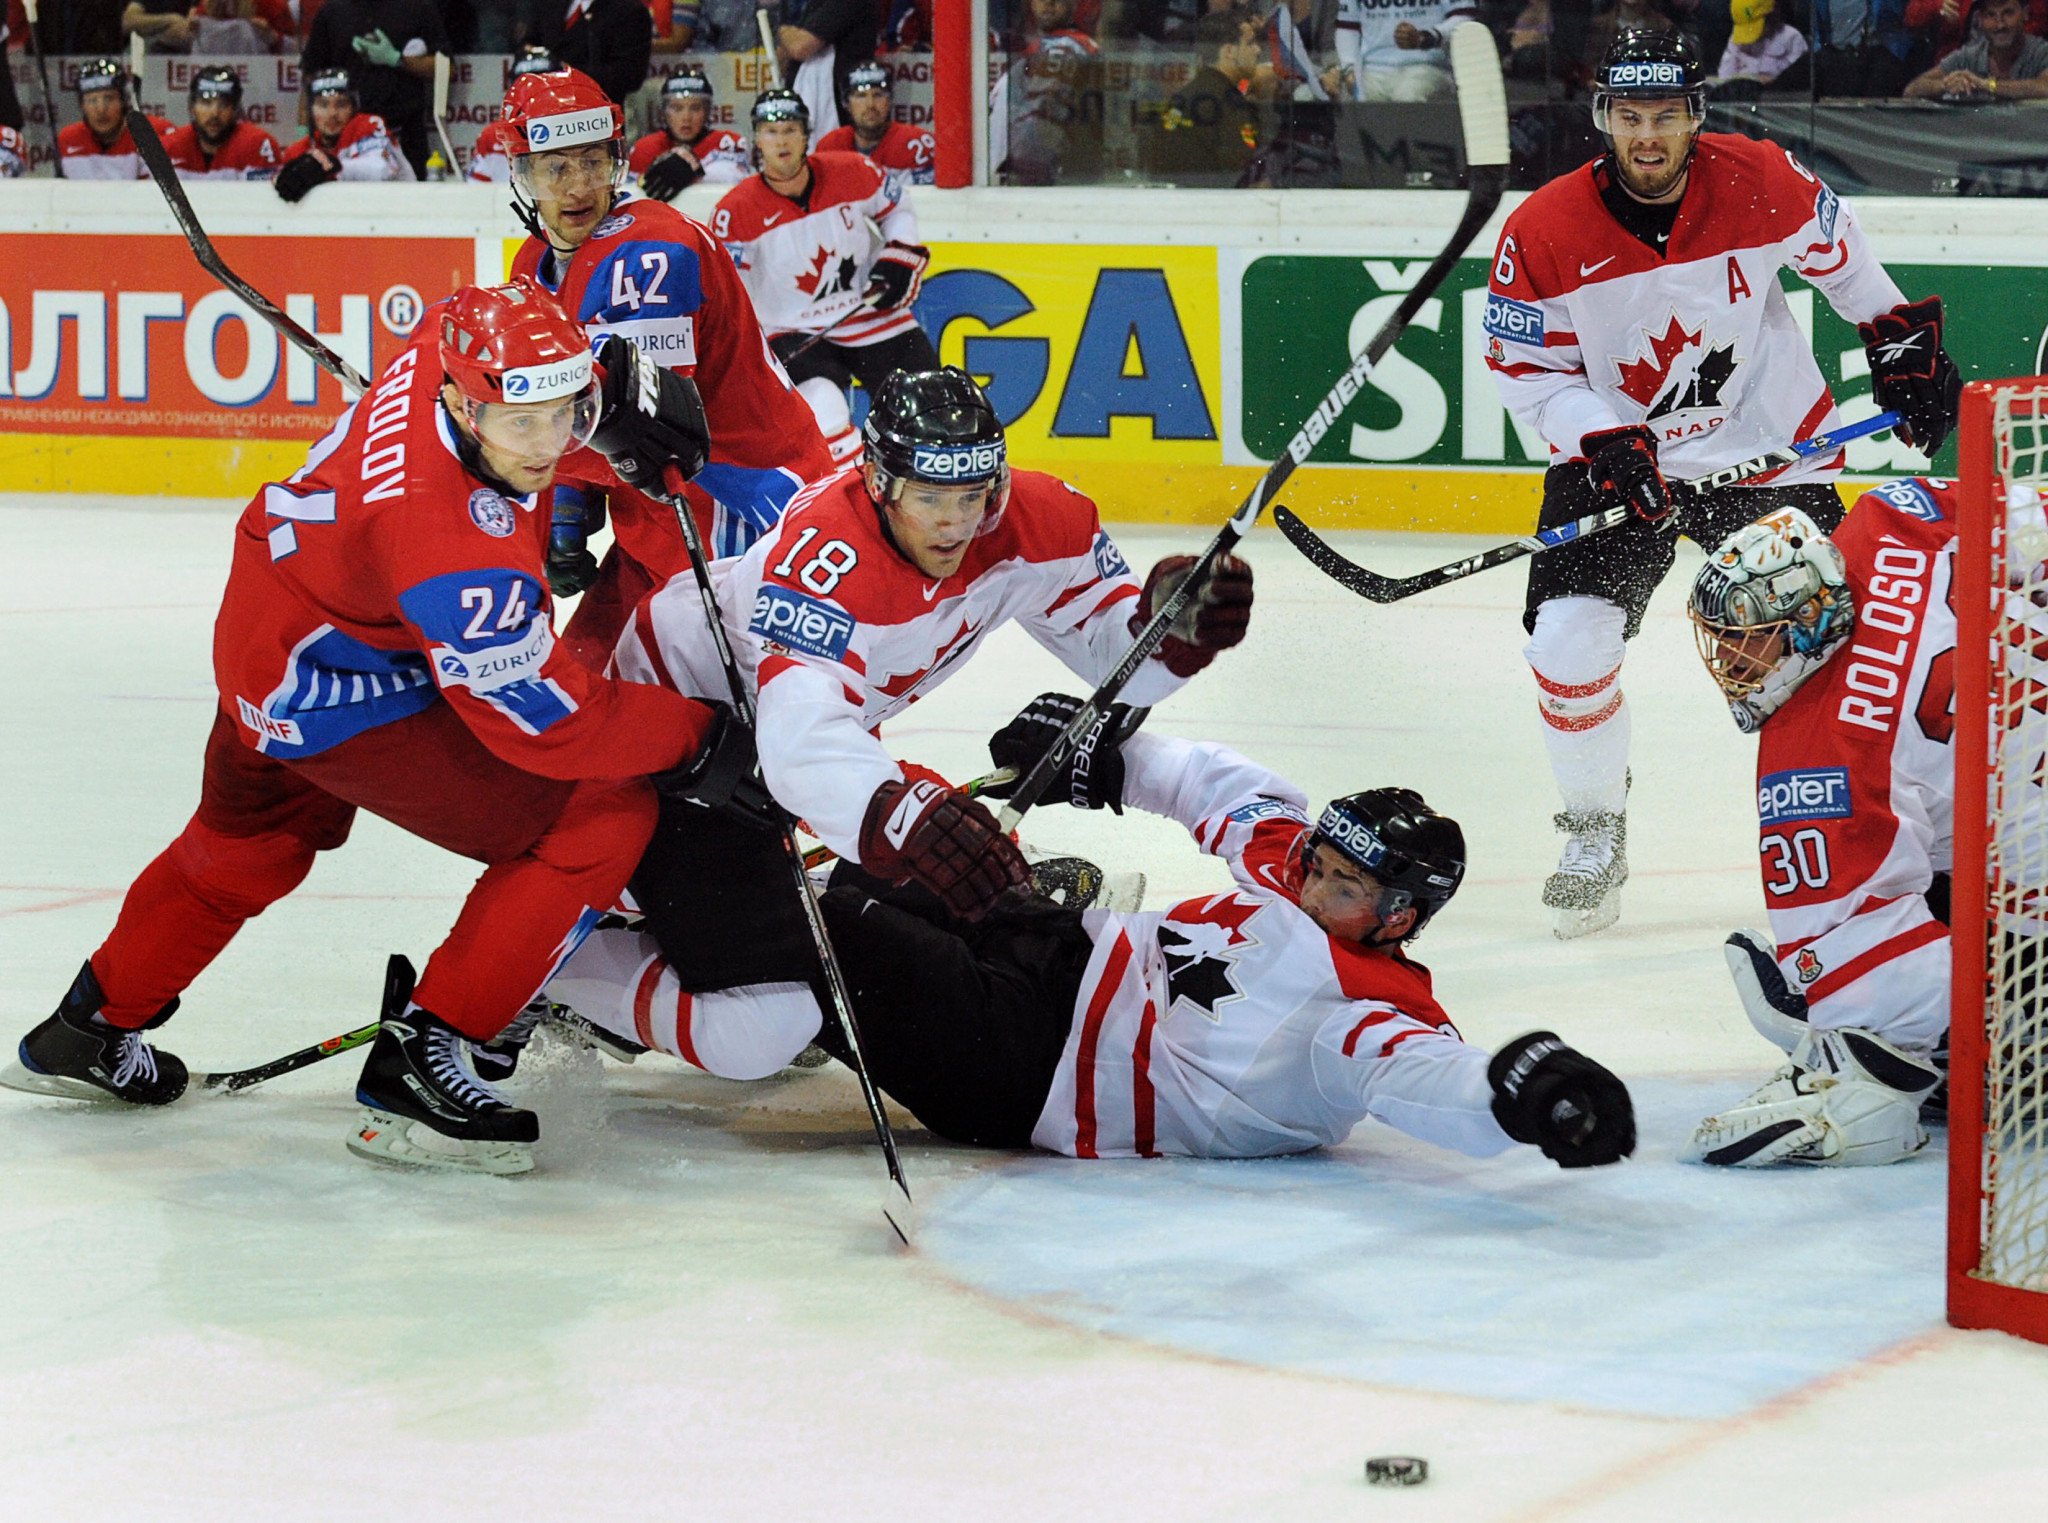 Switzerland not applying to host IIHF Men's World Championship next year